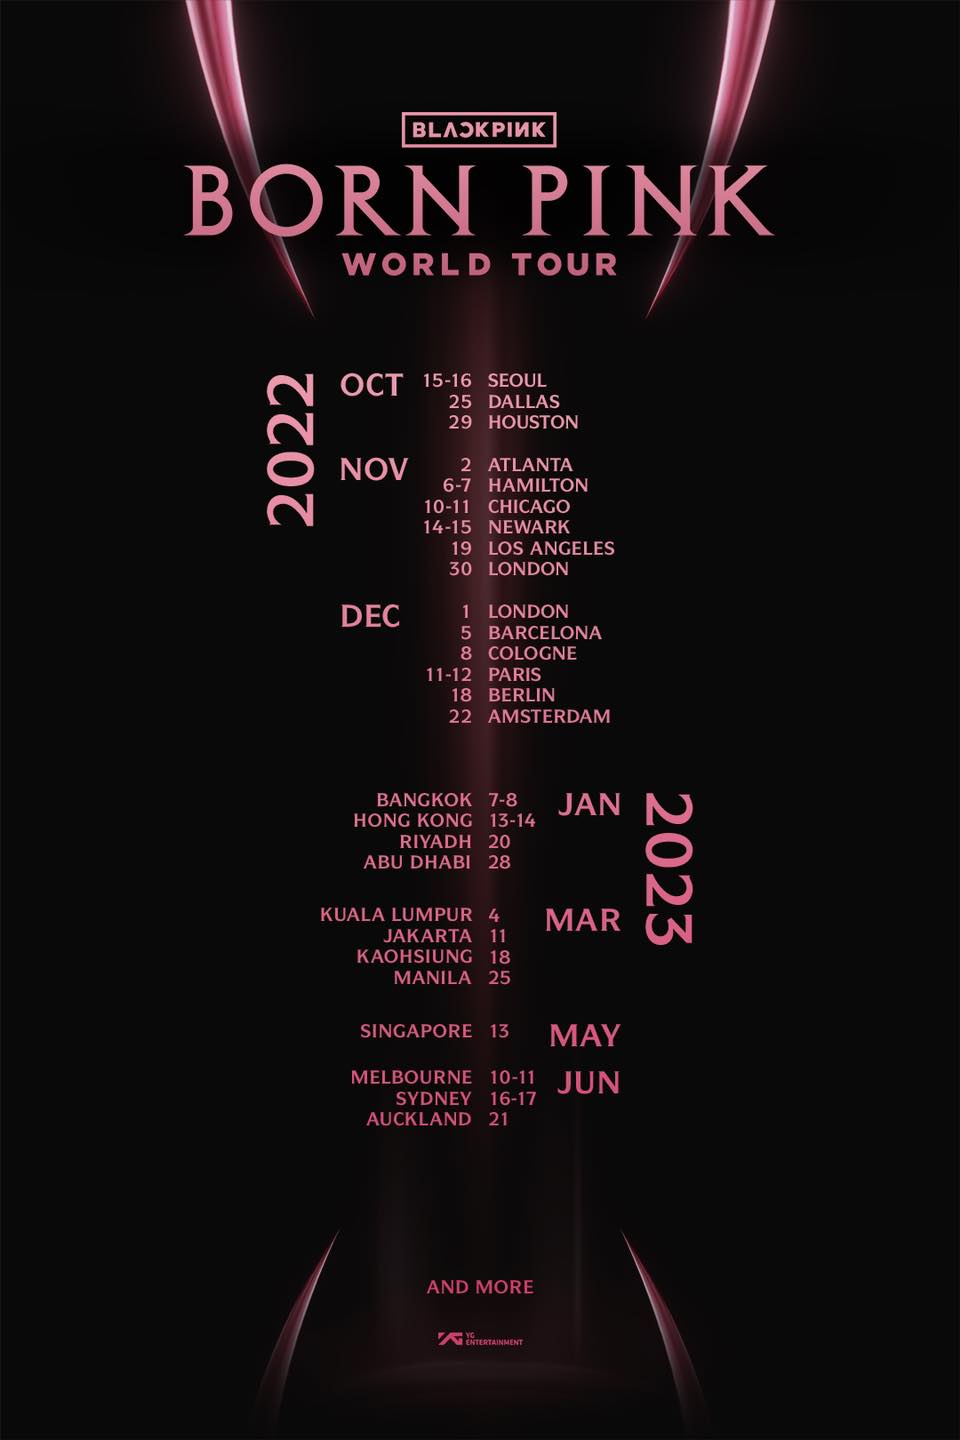 BLACKPINK sẽ có tour diễn vòng quanh thế giới vào cuối năm 2022 - đầu năm 2023 với 26 địa điểm đã được quyết định